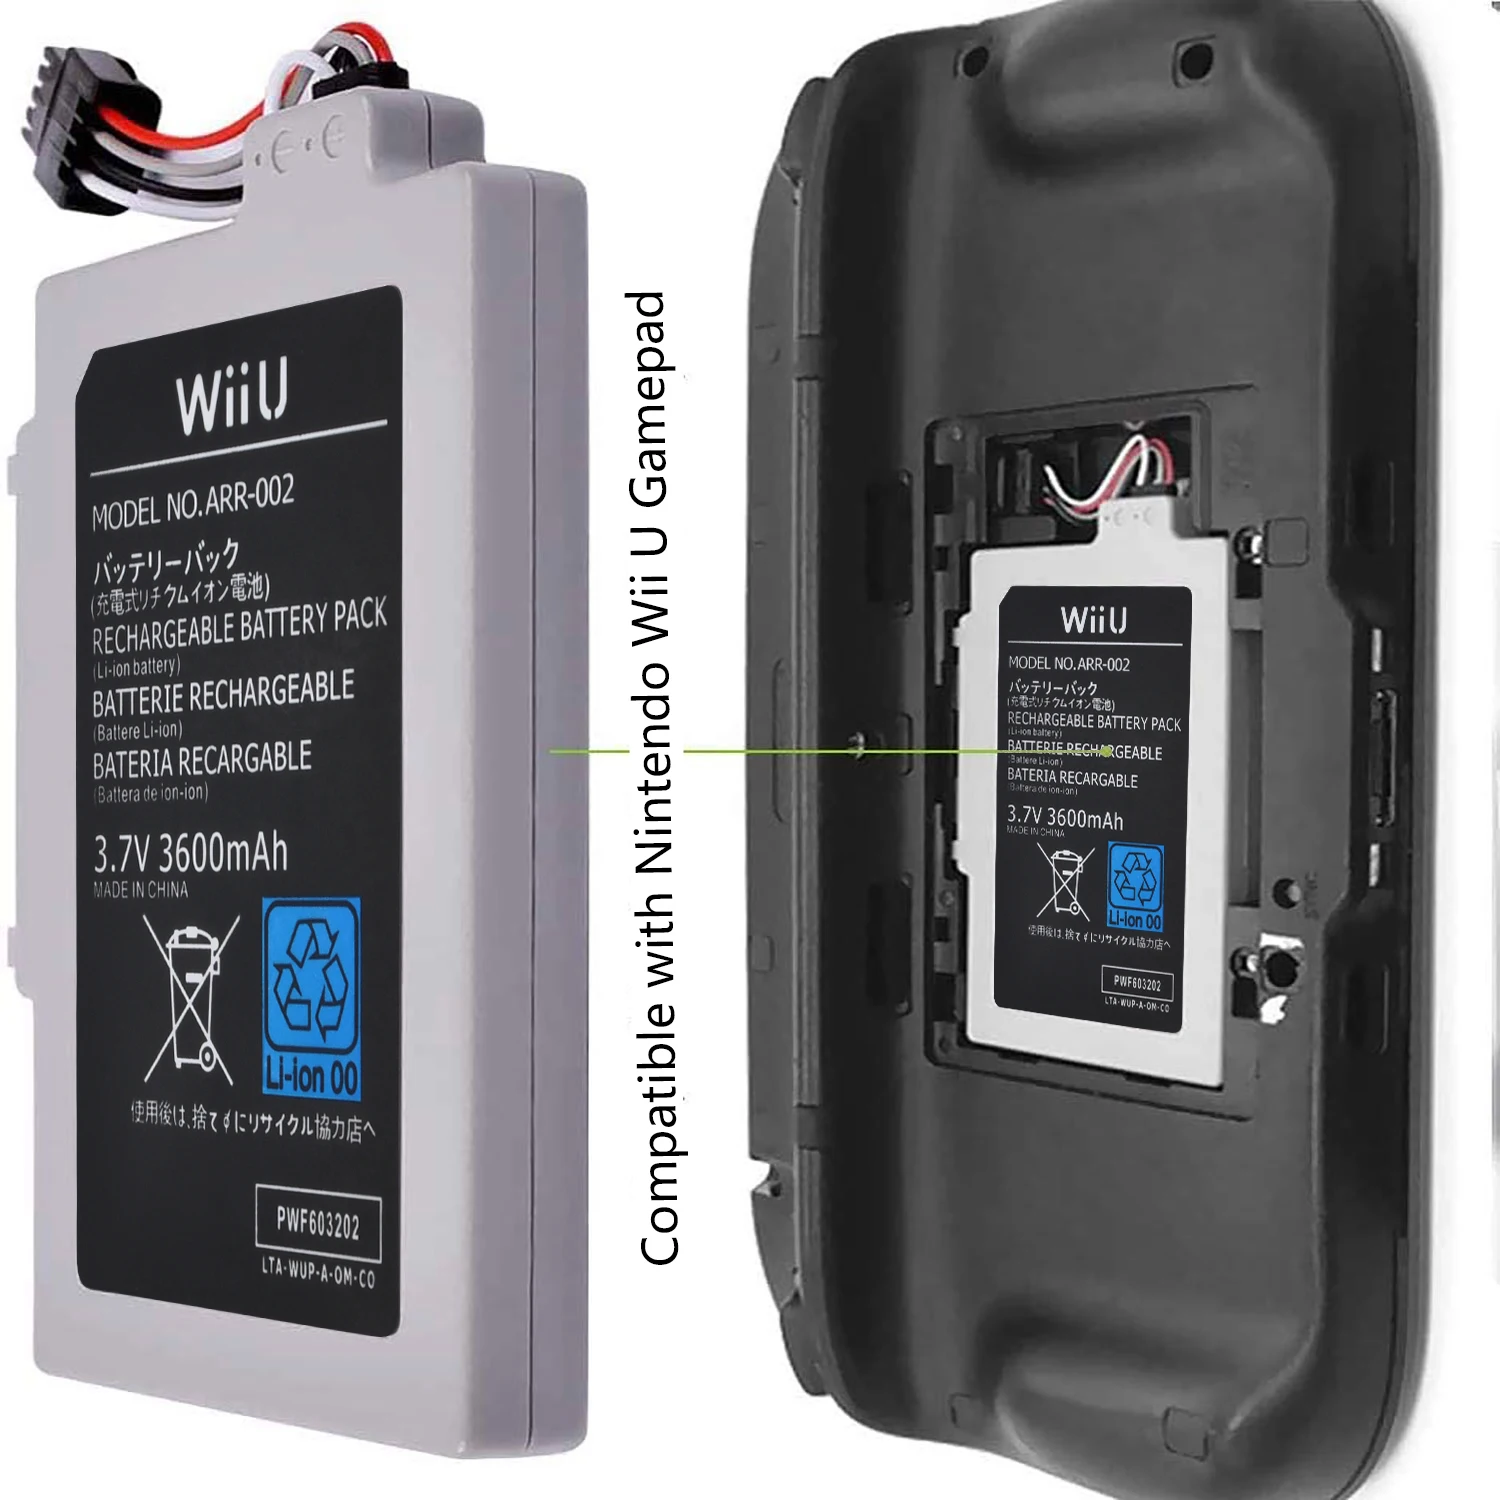 Batteria ricaricabile ARR-002 3600mAh per il regolatore senza fili di  Nintendo Wii U